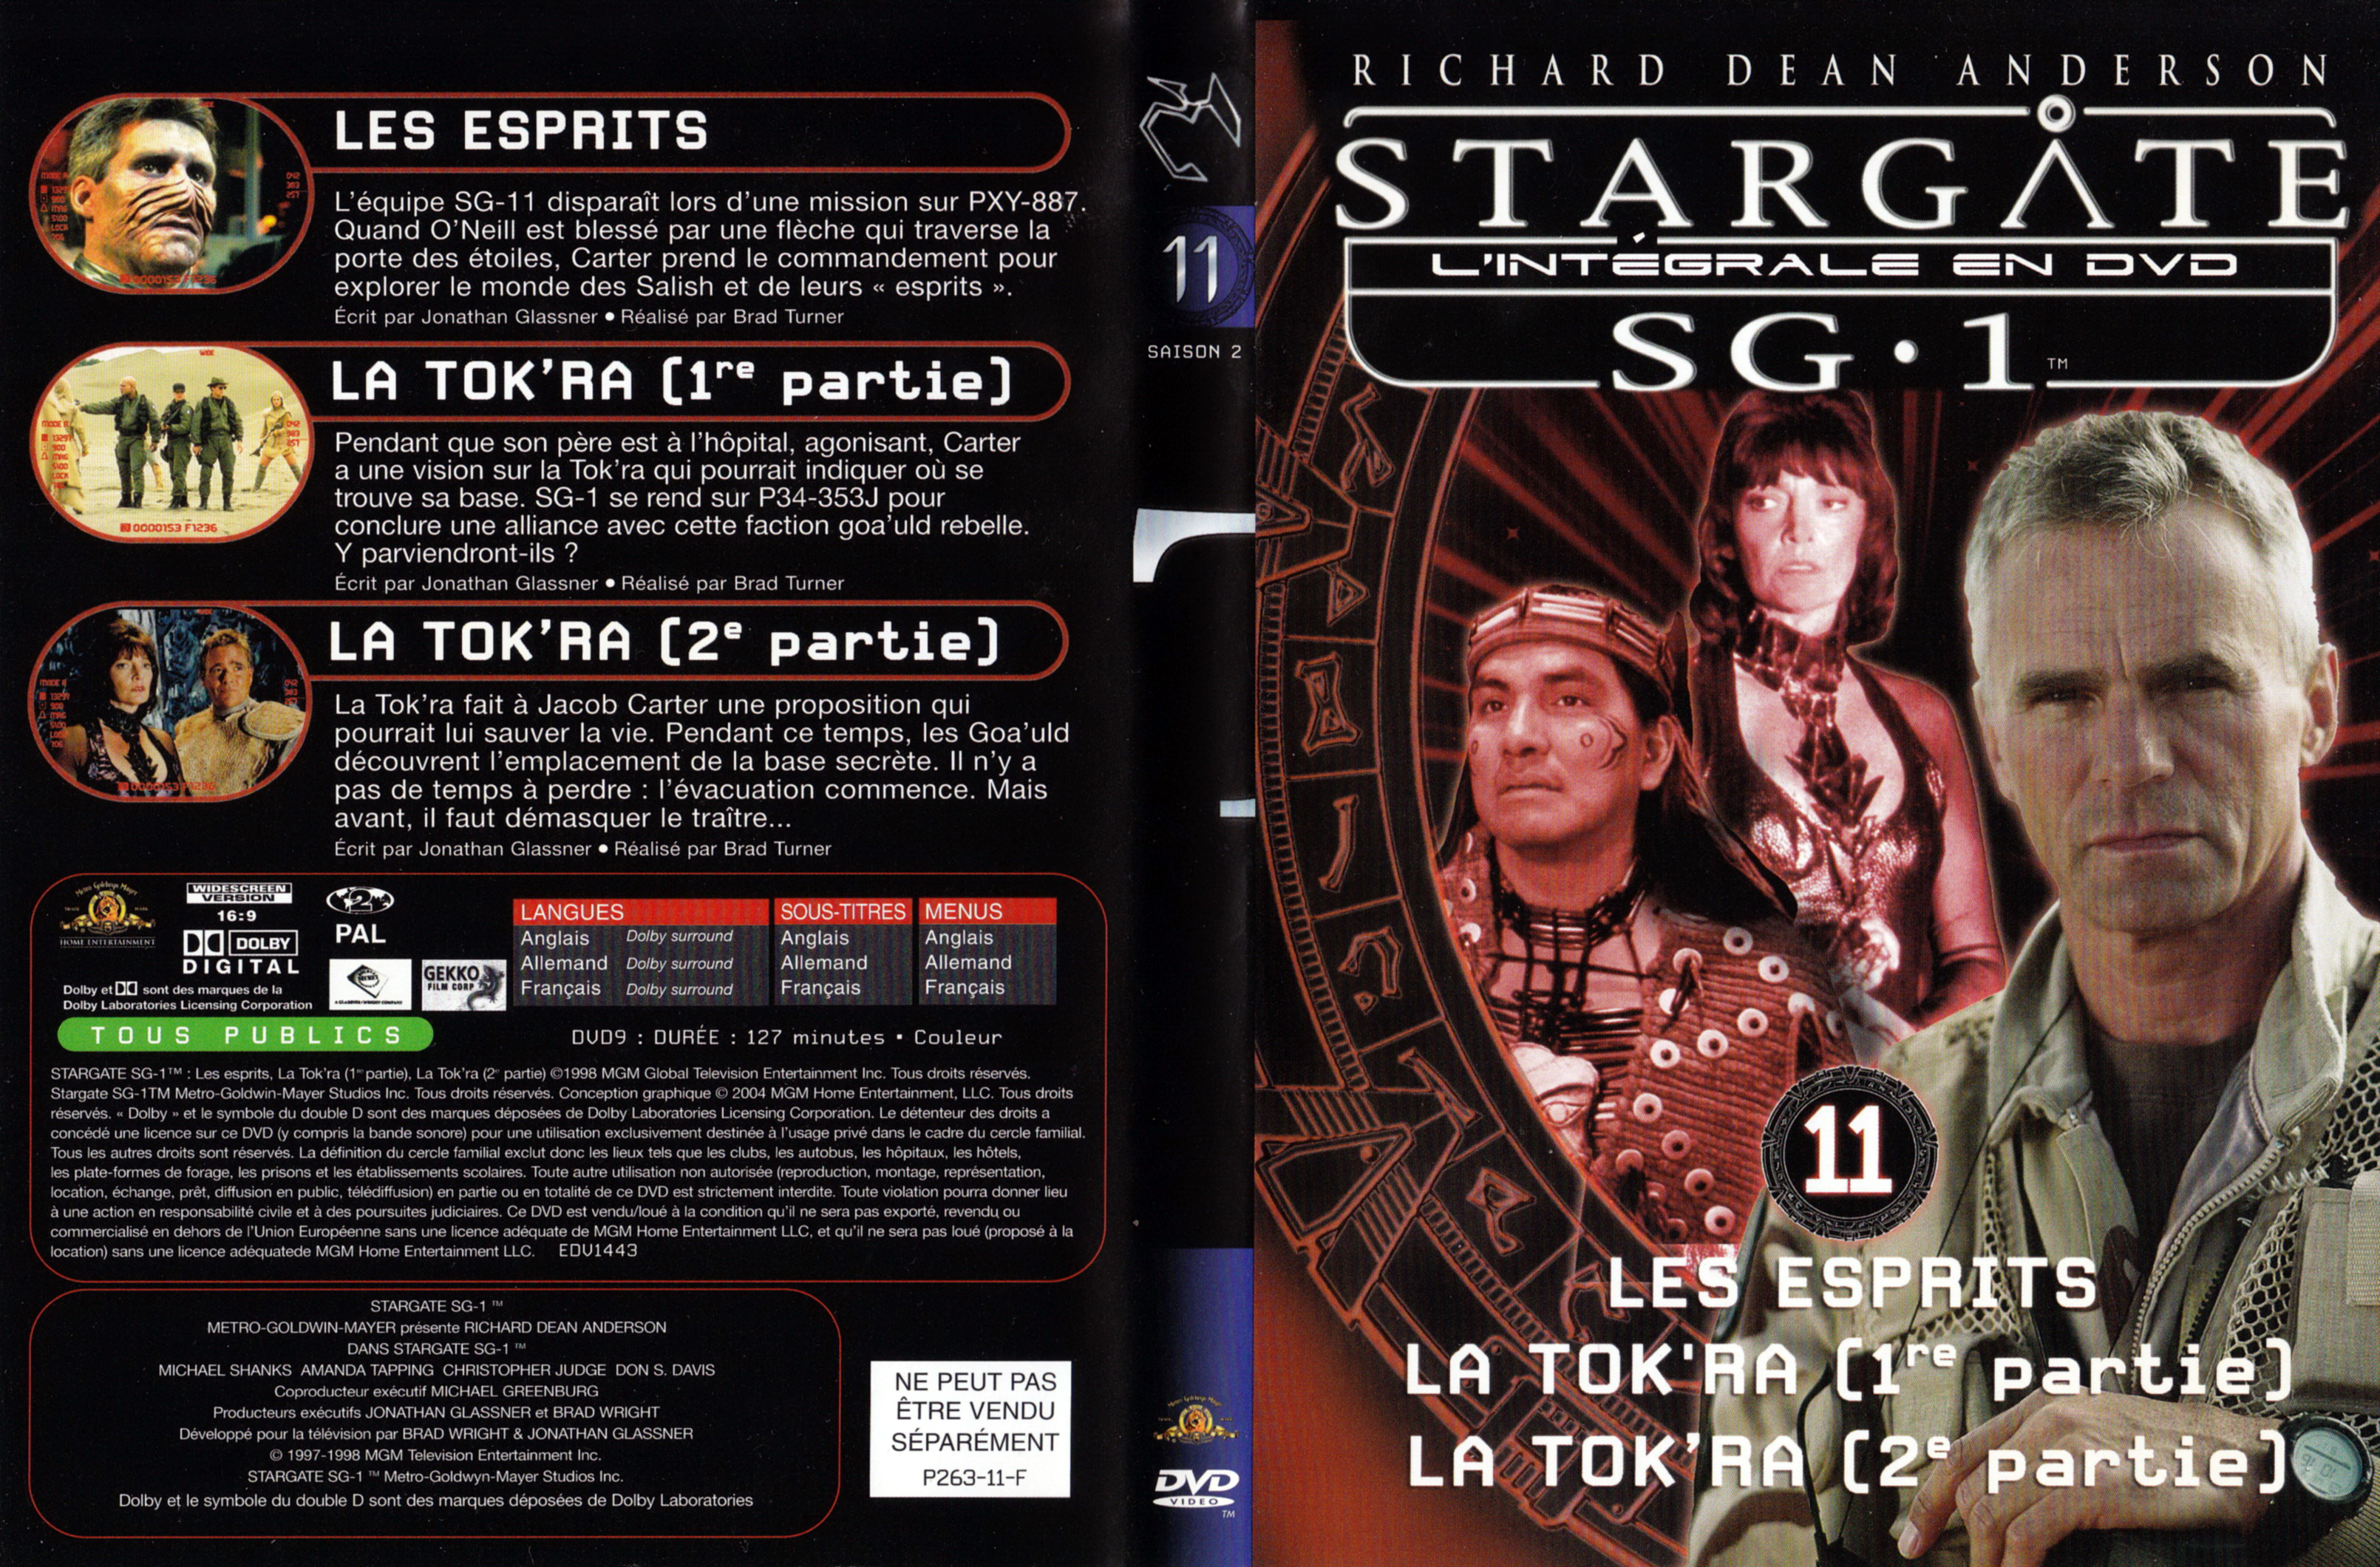 Jaquette DVD Stargate SG1 Intgrale Saison 2 vol 11